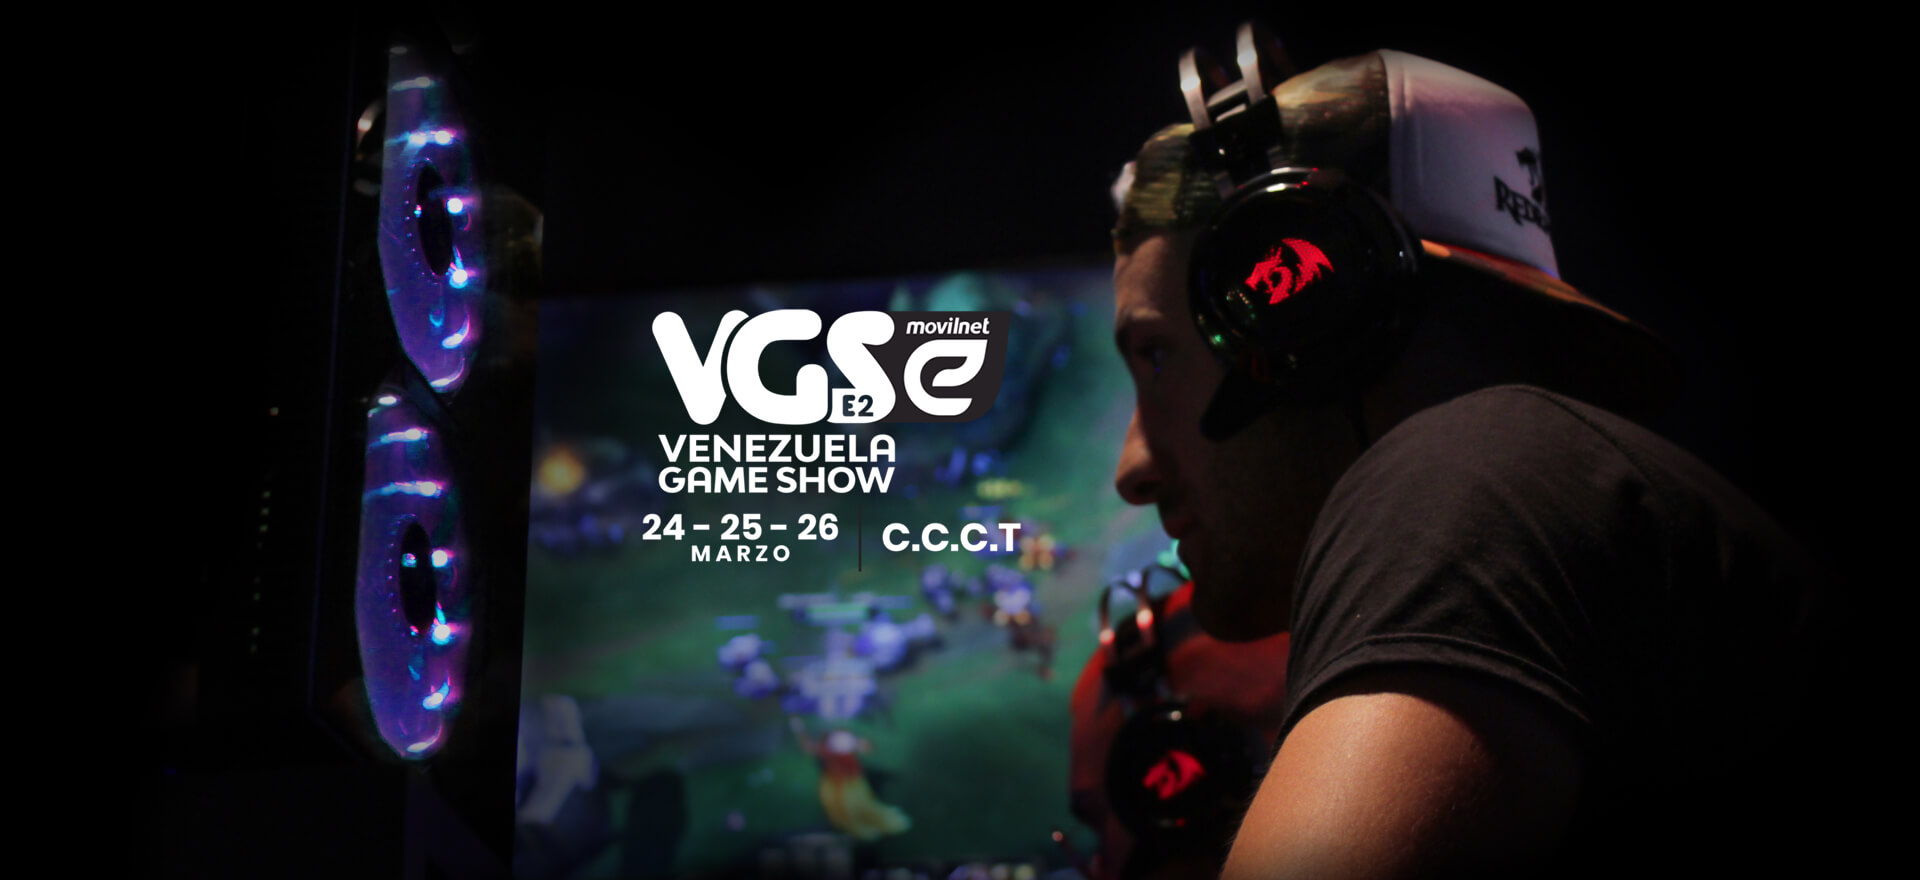 VGS game show venezuela